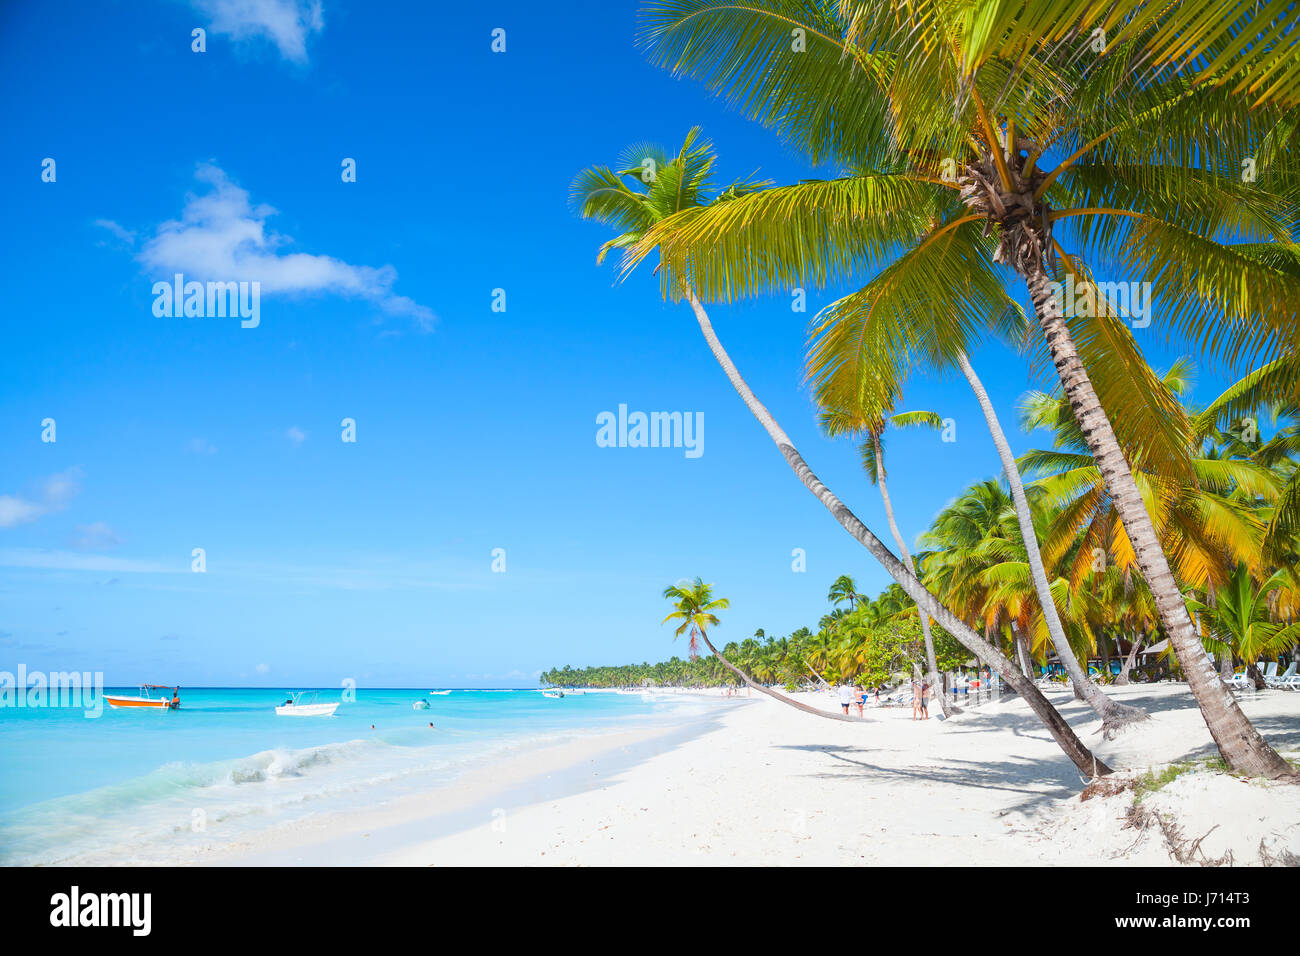 Paesaggio con palme da cocco che cresce su una spiaggia di sabbia. Mar dei Caraibi, Repubblica dominicana, Saona Island coast, popolare località turistica Foto Stock